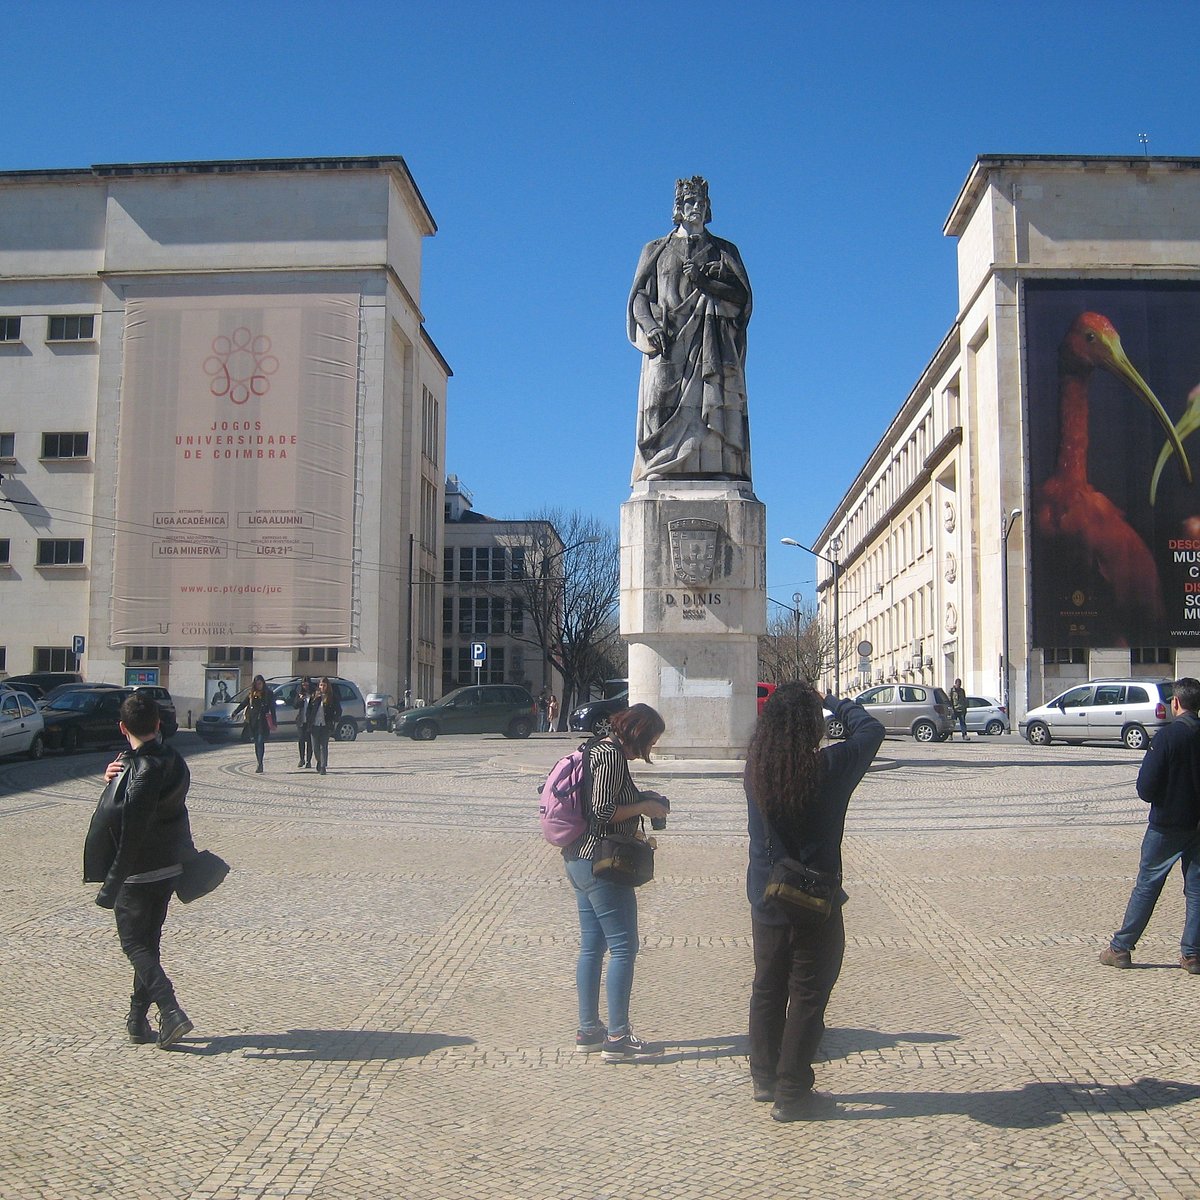 Estatua De D Dinis Coimbra 23 Lohnt Es Sich Mit Fotos